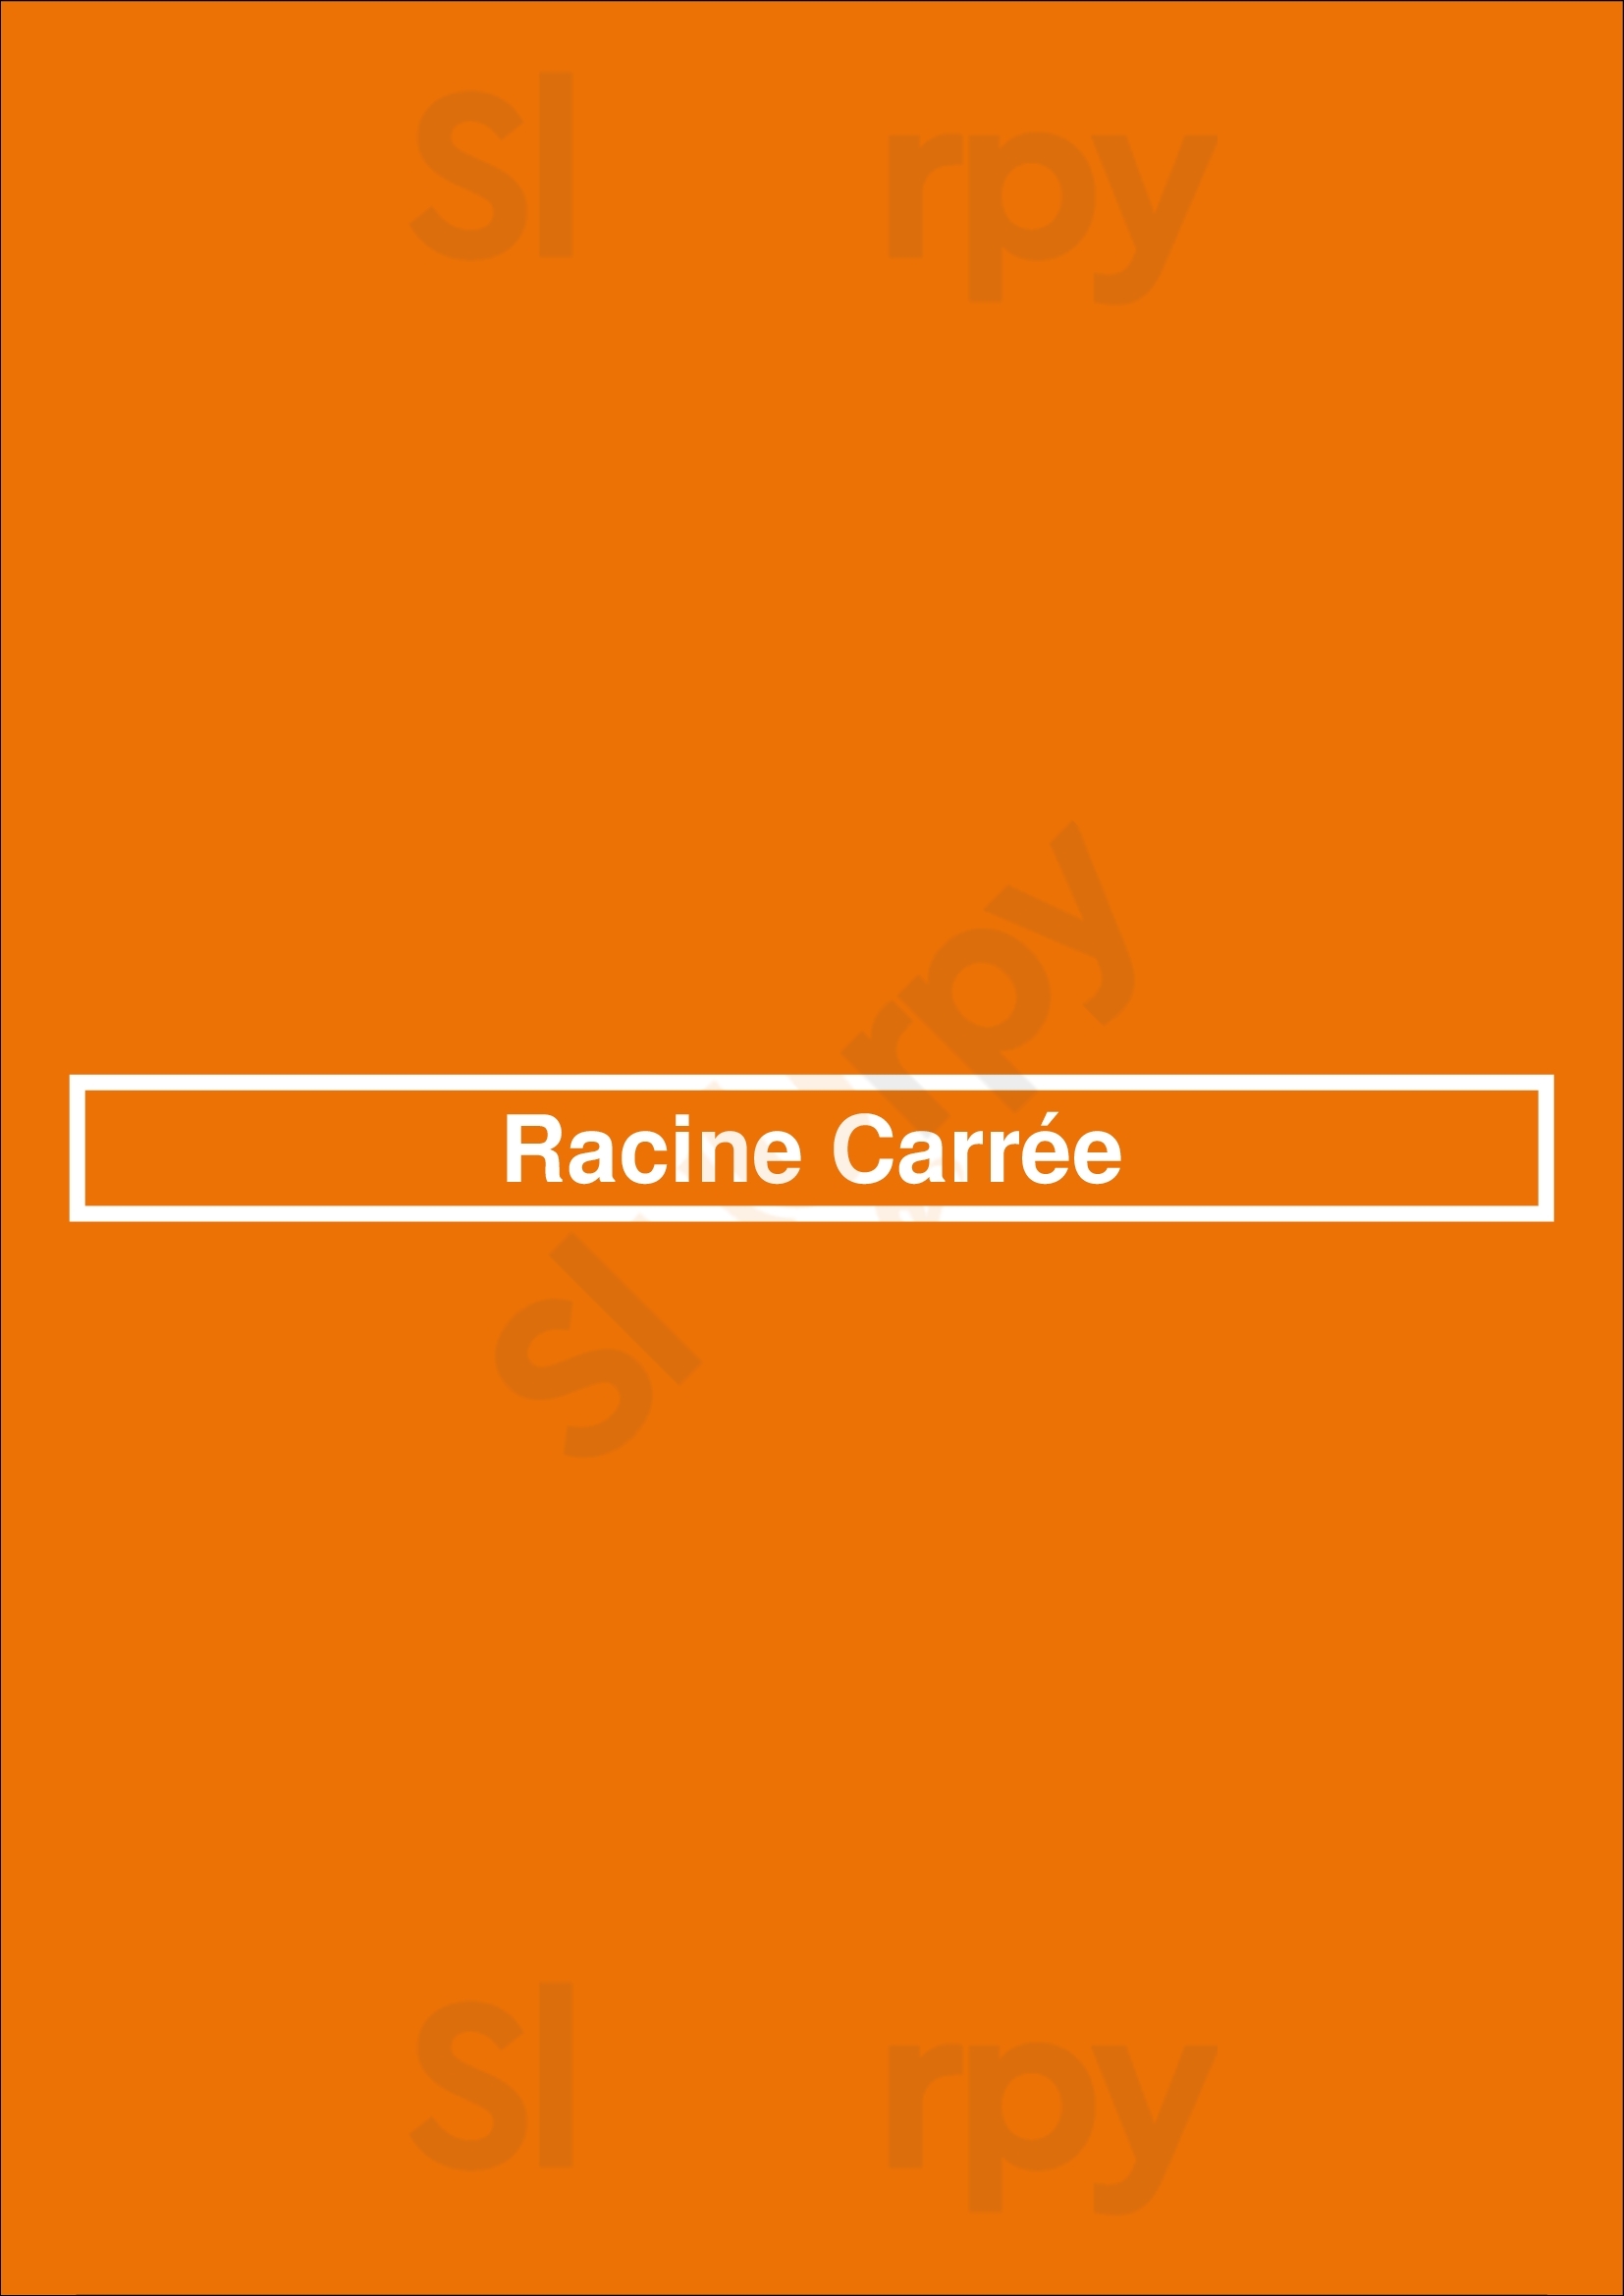 Racine Carrée Uccle Menu - 1